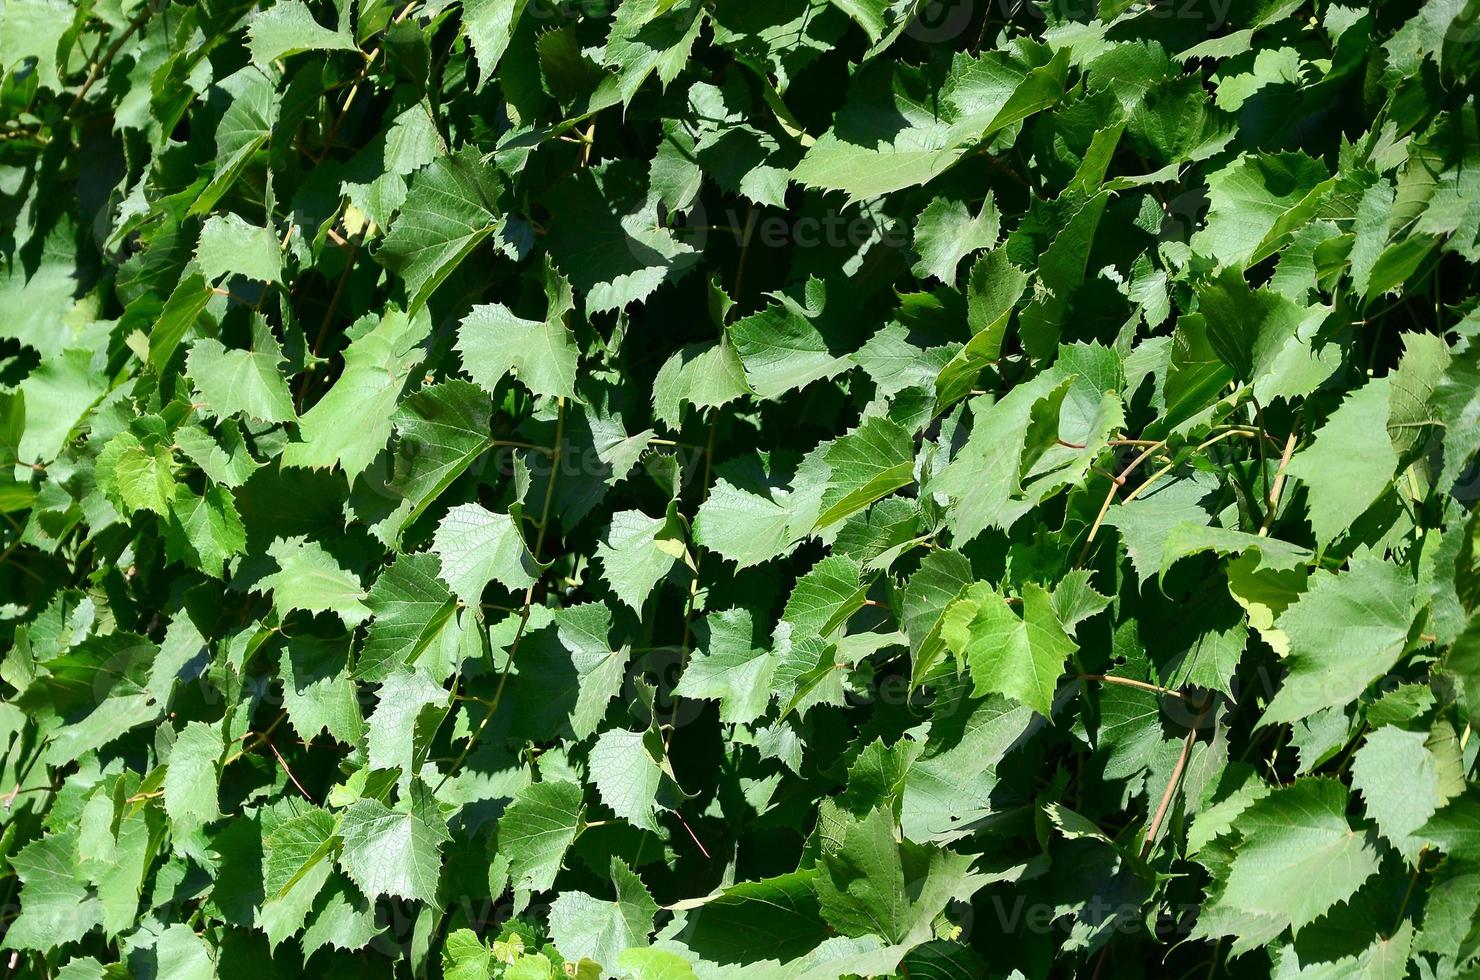 structuur van een muur overwoekerd met klimop van groen bladeren in een wijngaard foto